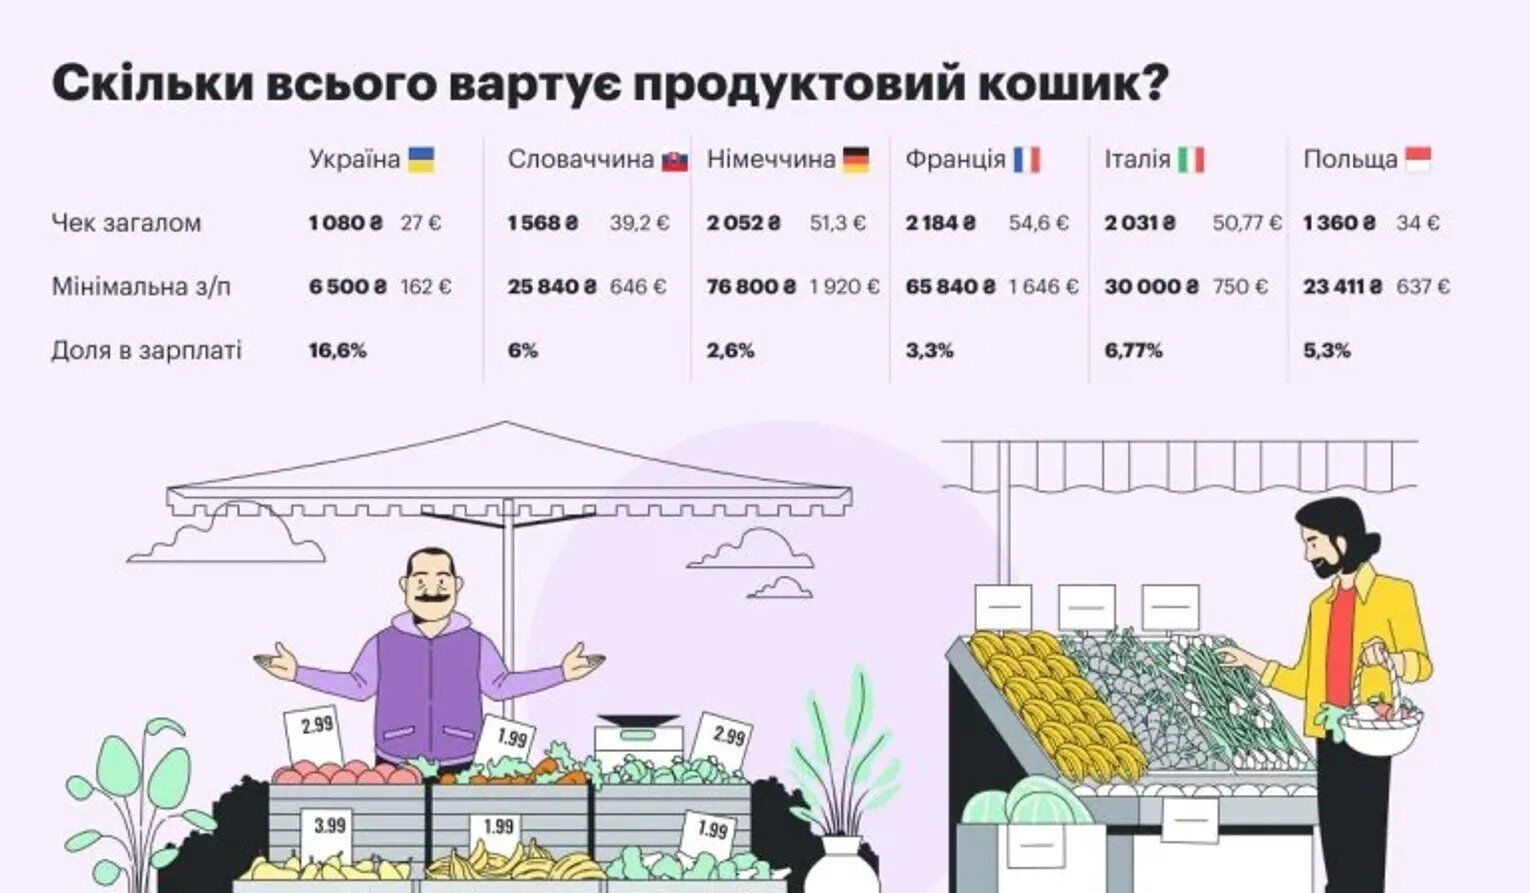 Скільки коштує продуктовий кошик у країнах ЄС та в Україні